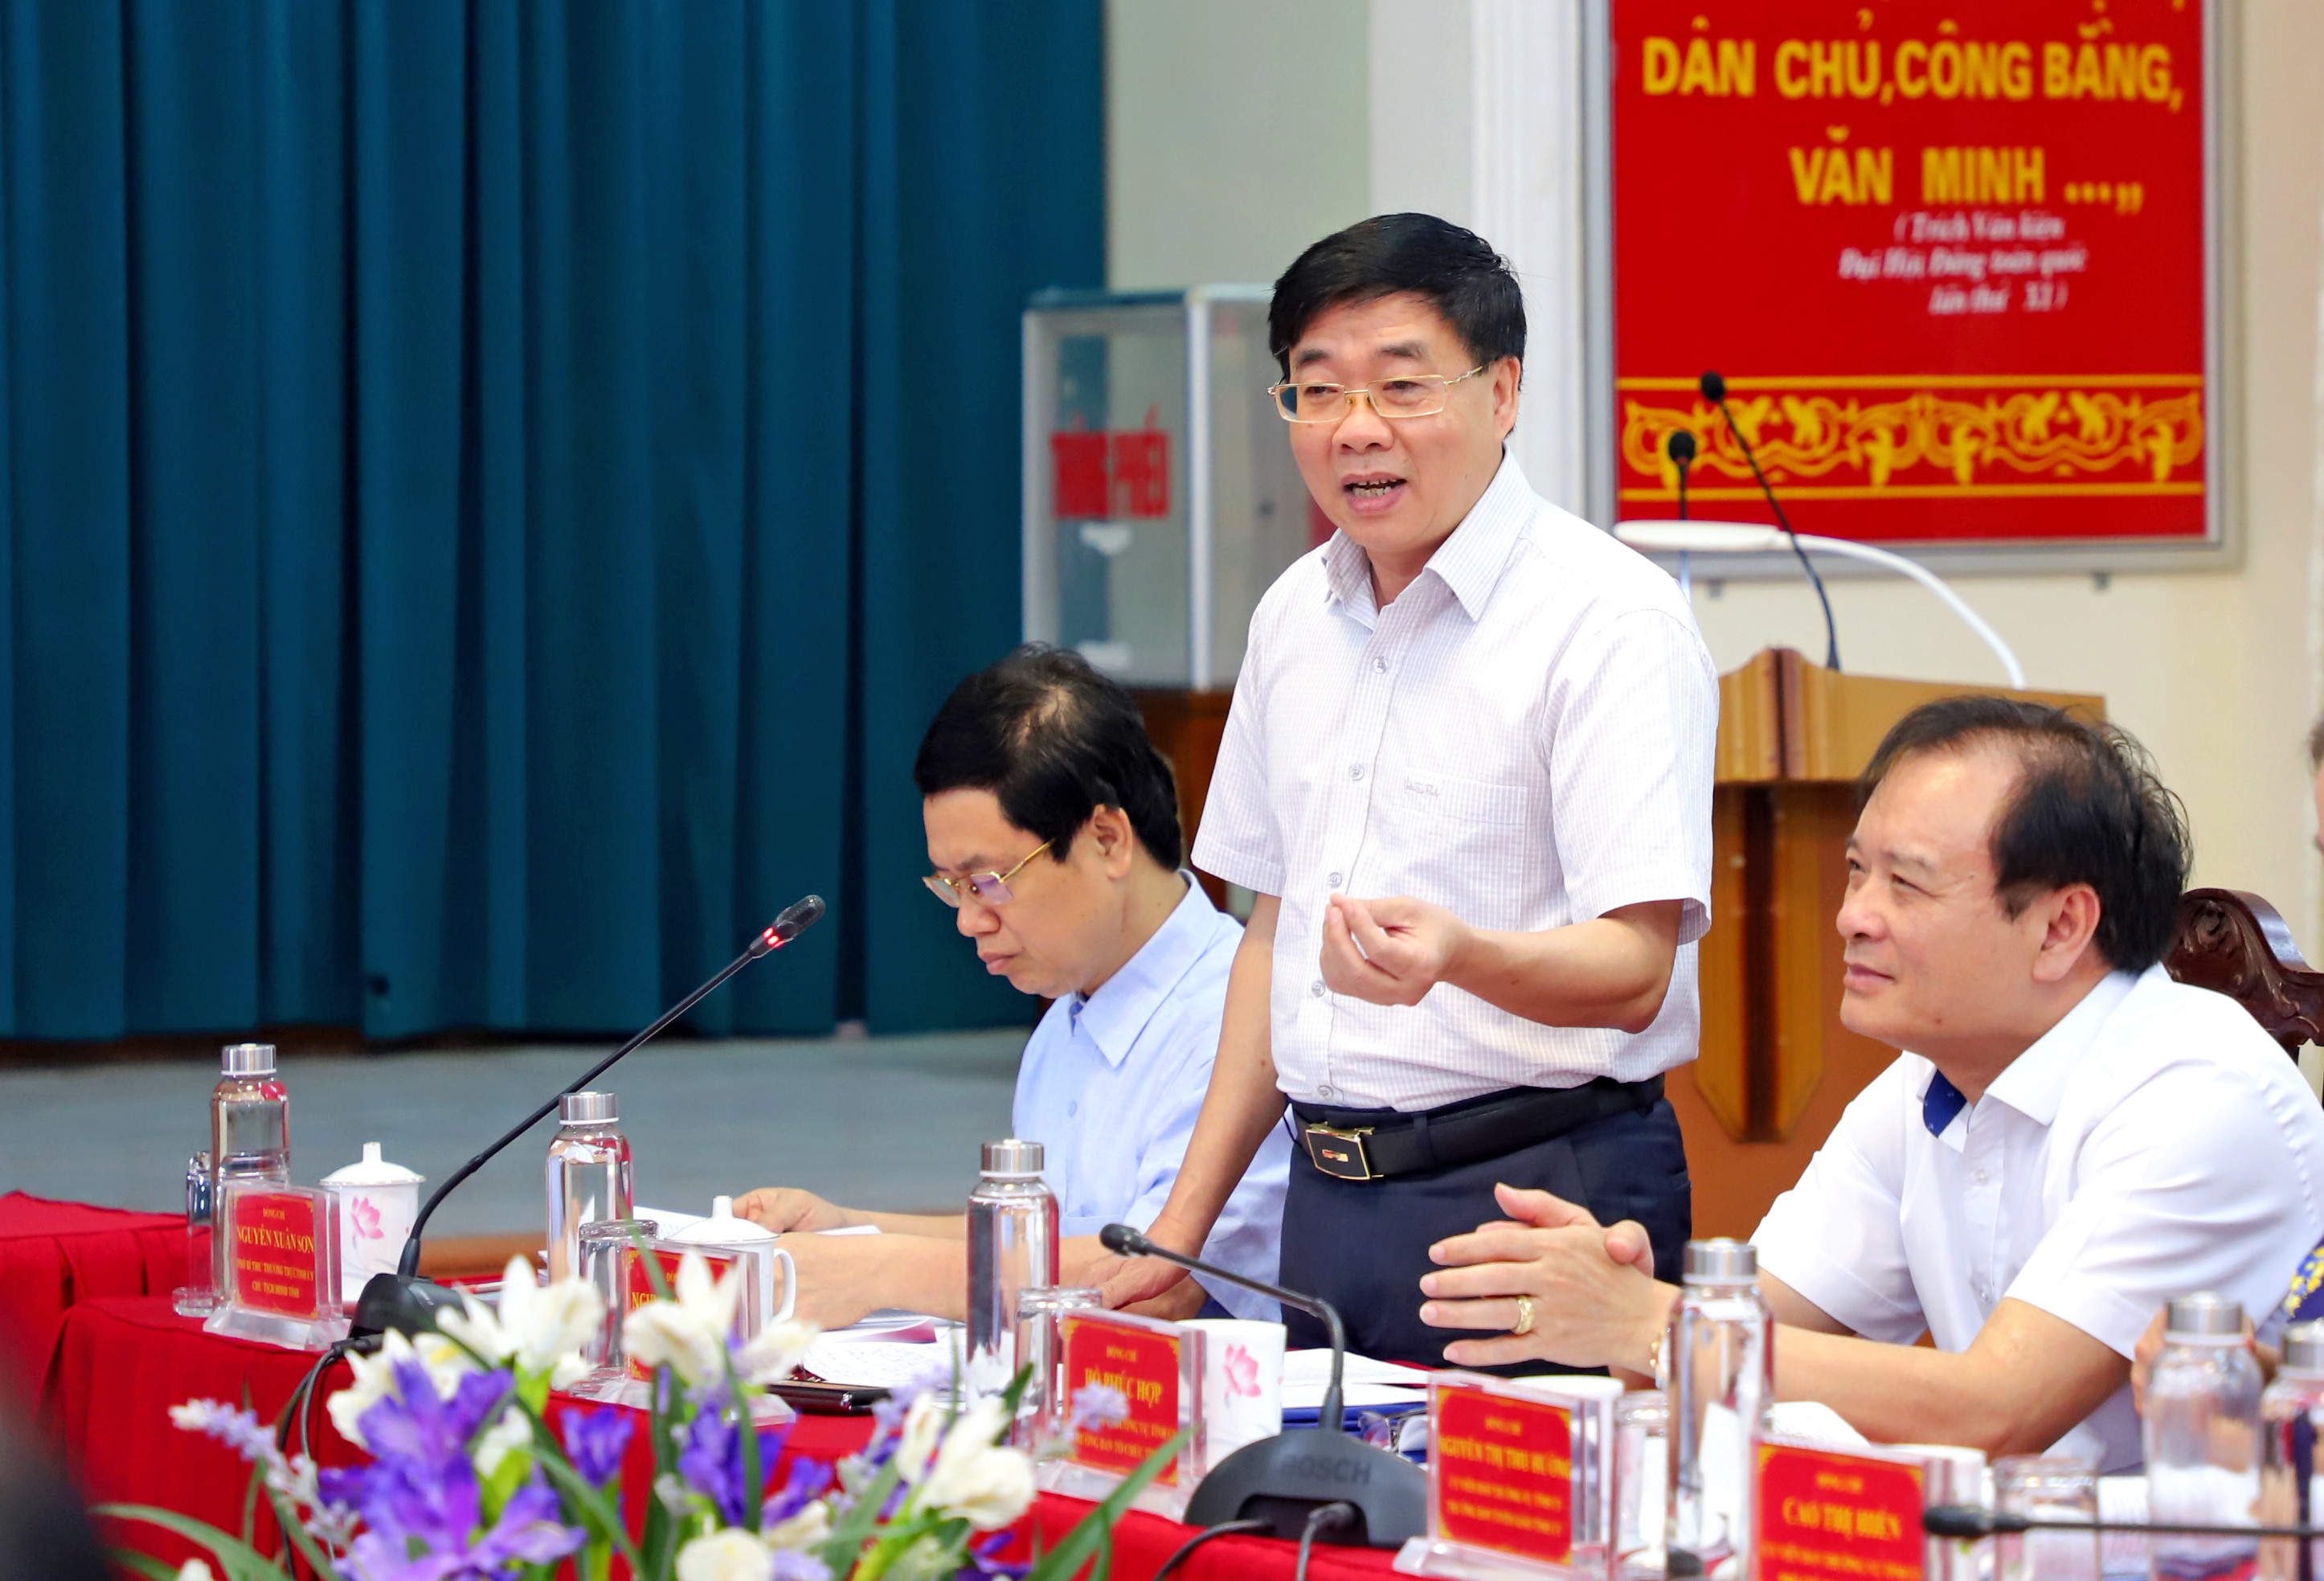 Đồng chí Nguyễn Văn Thông - Phó Bí thư Tỉnh ủy phát biểu tại cuộc làm việc. Ảnh: Thành Duy